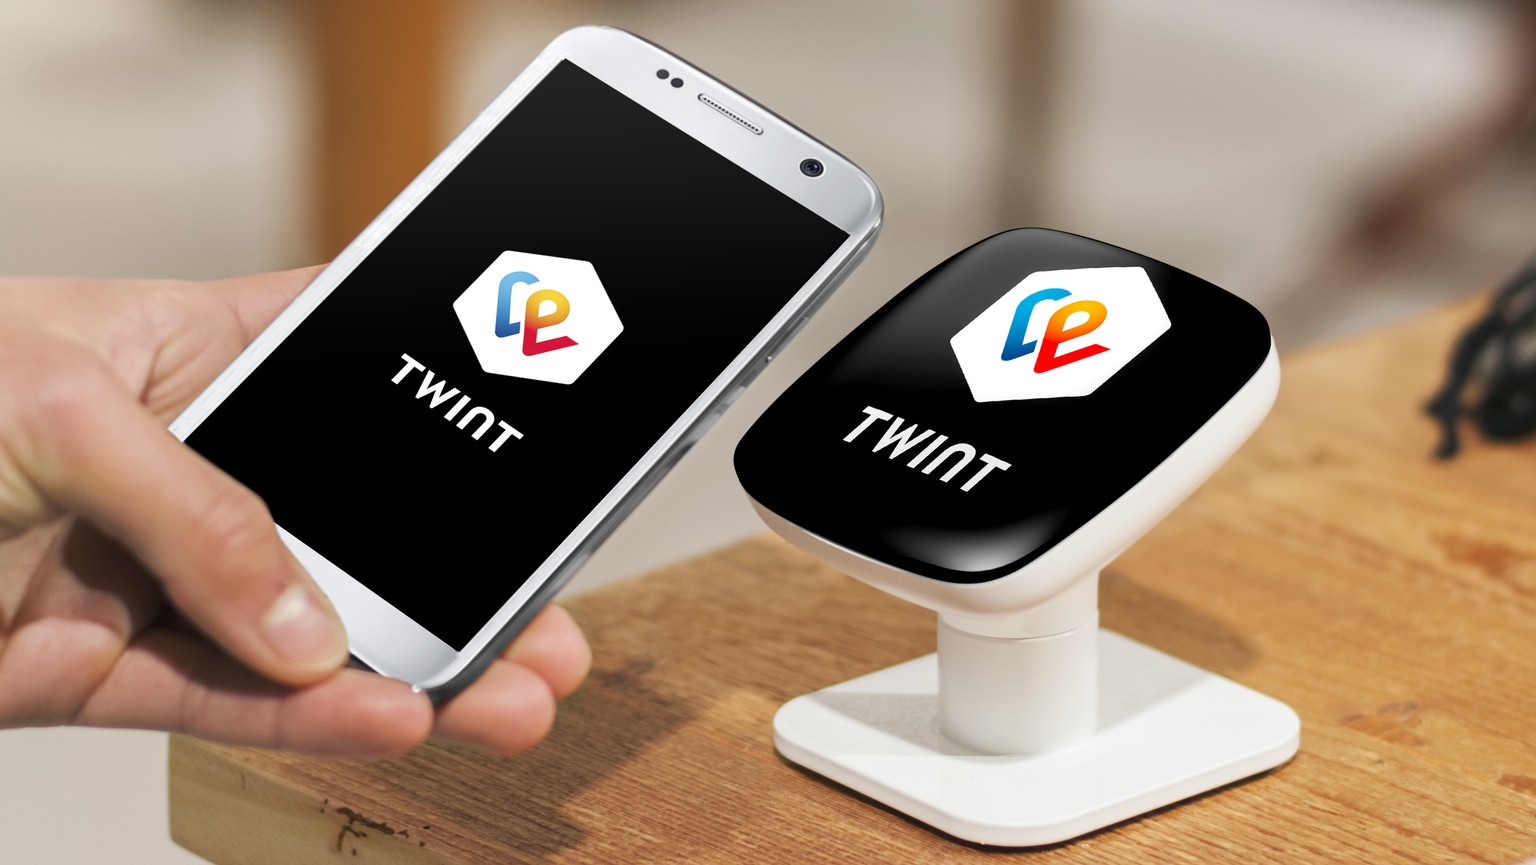 Schweizer Bezahl-App Twint kommt für iOS (iPhone) und Android